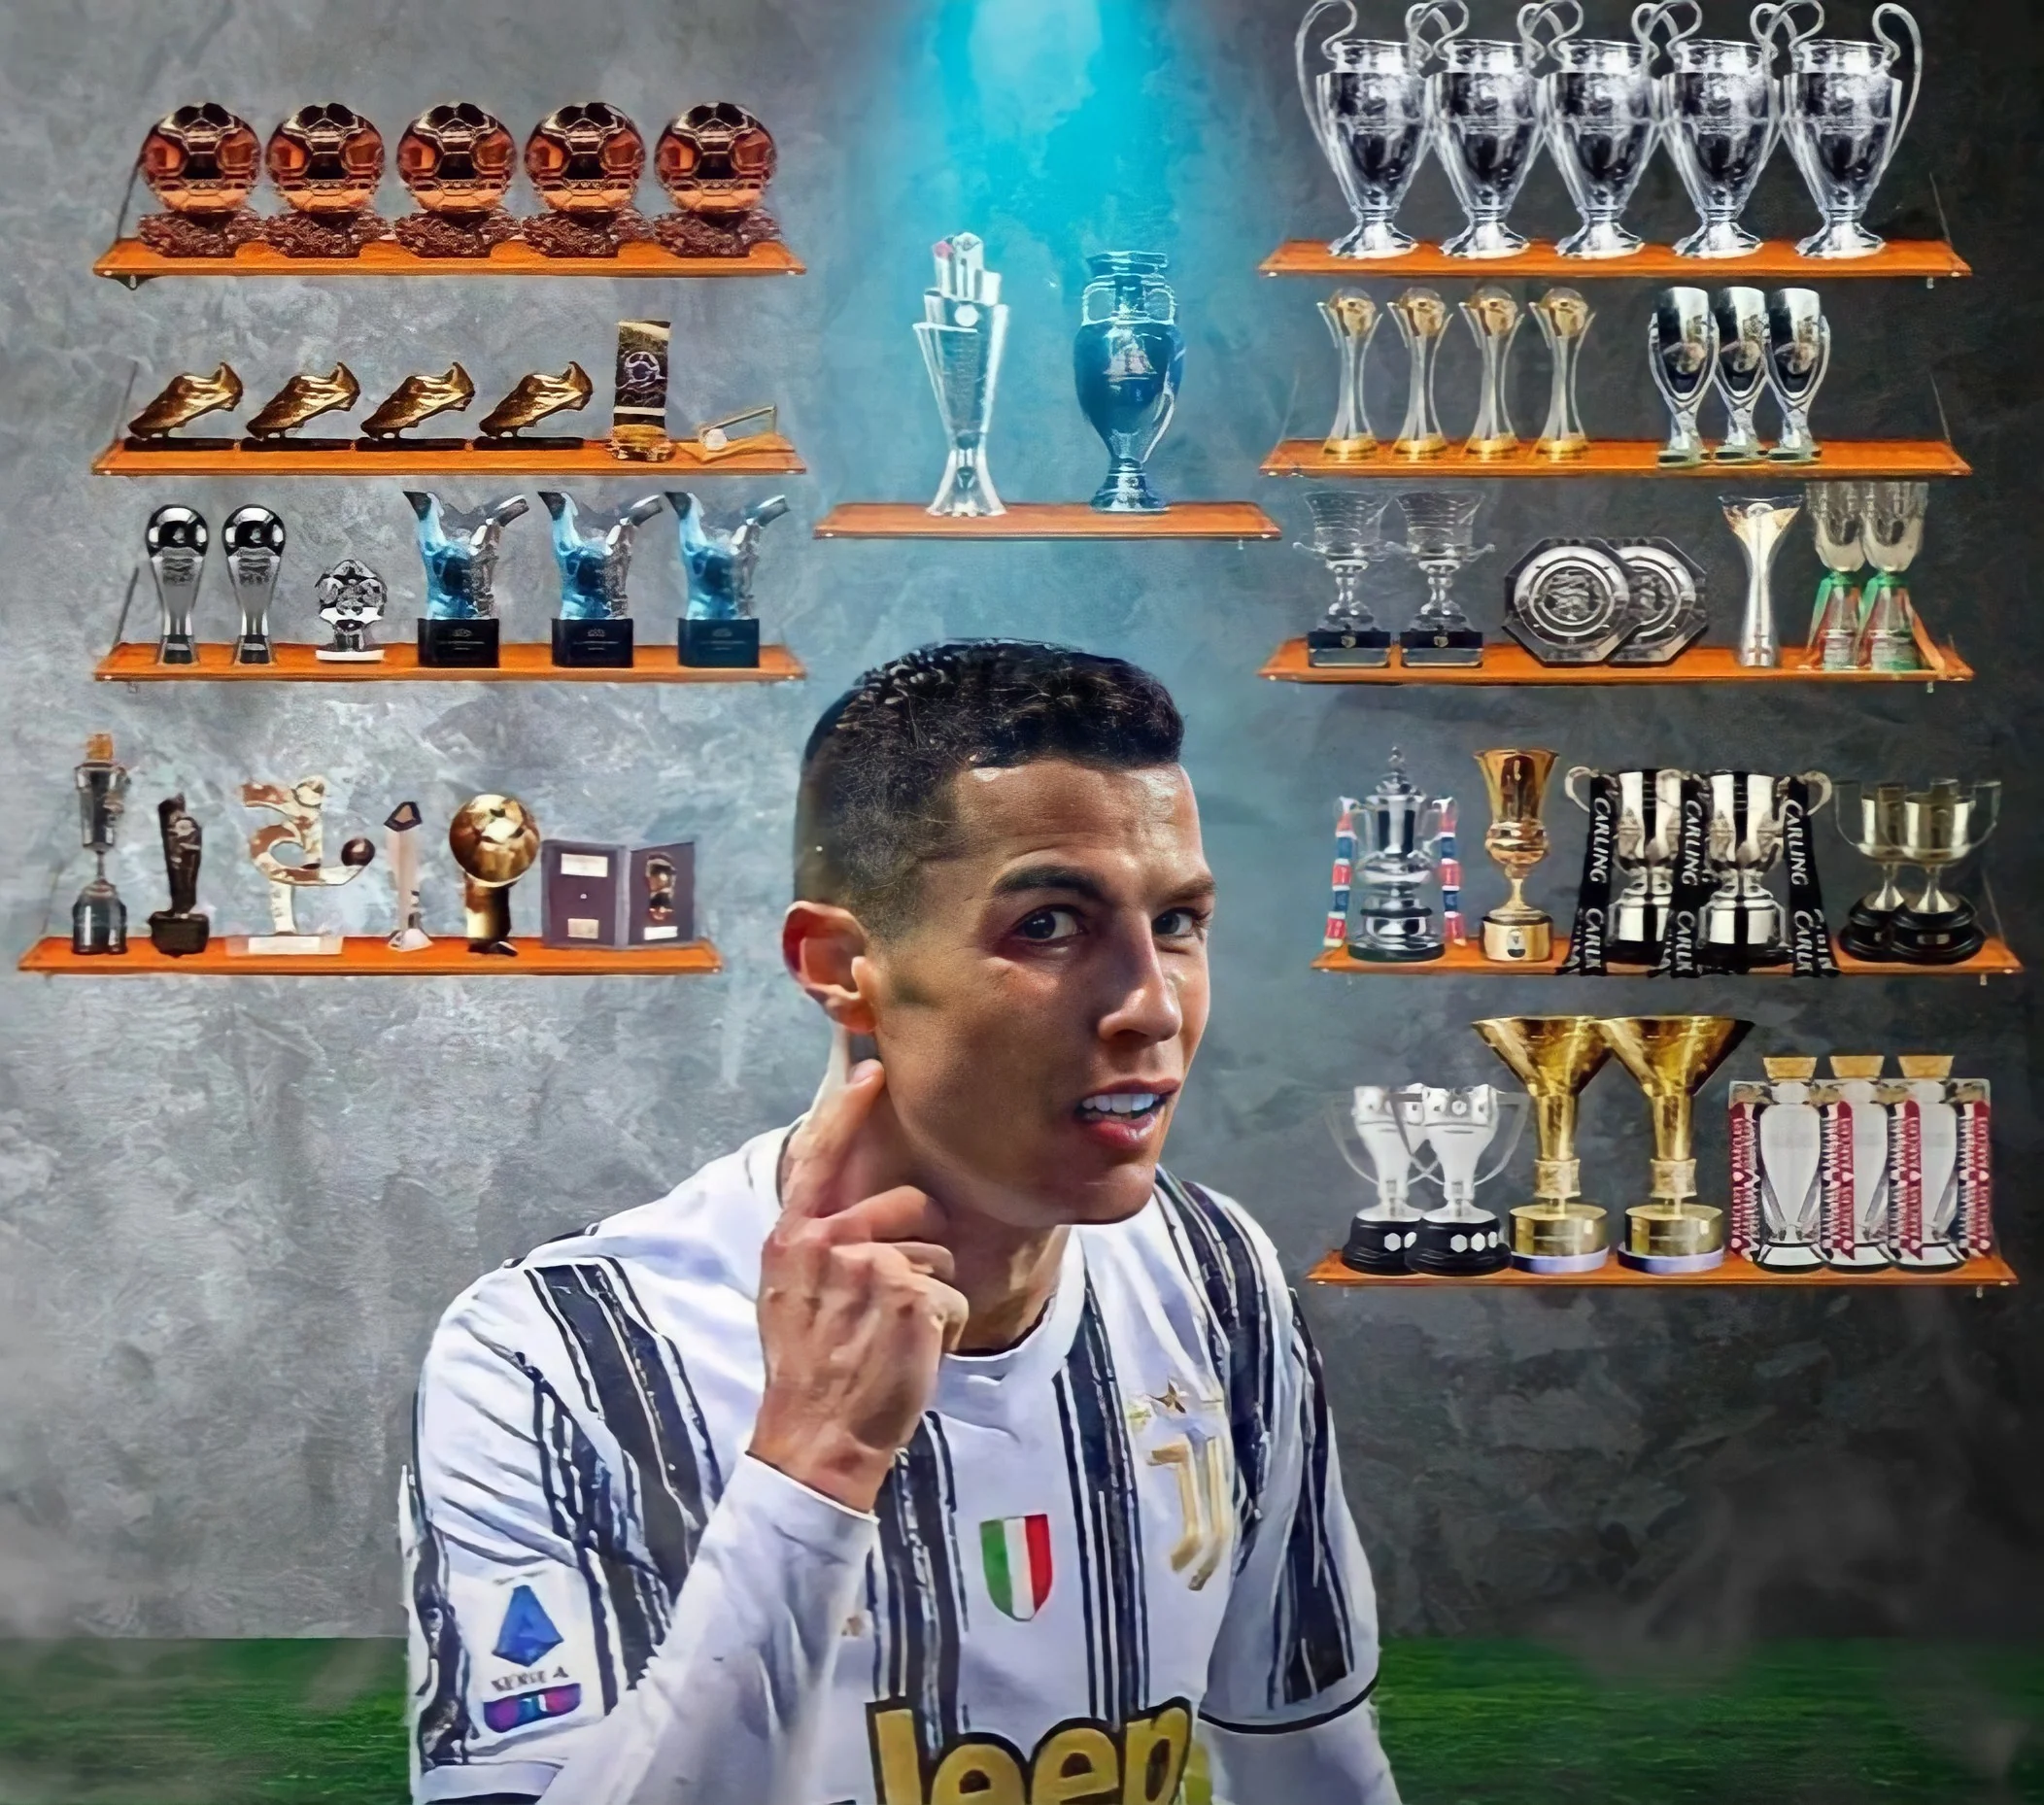 La carriera calcistica, la principale fonte di ricchezza di Ronaldo